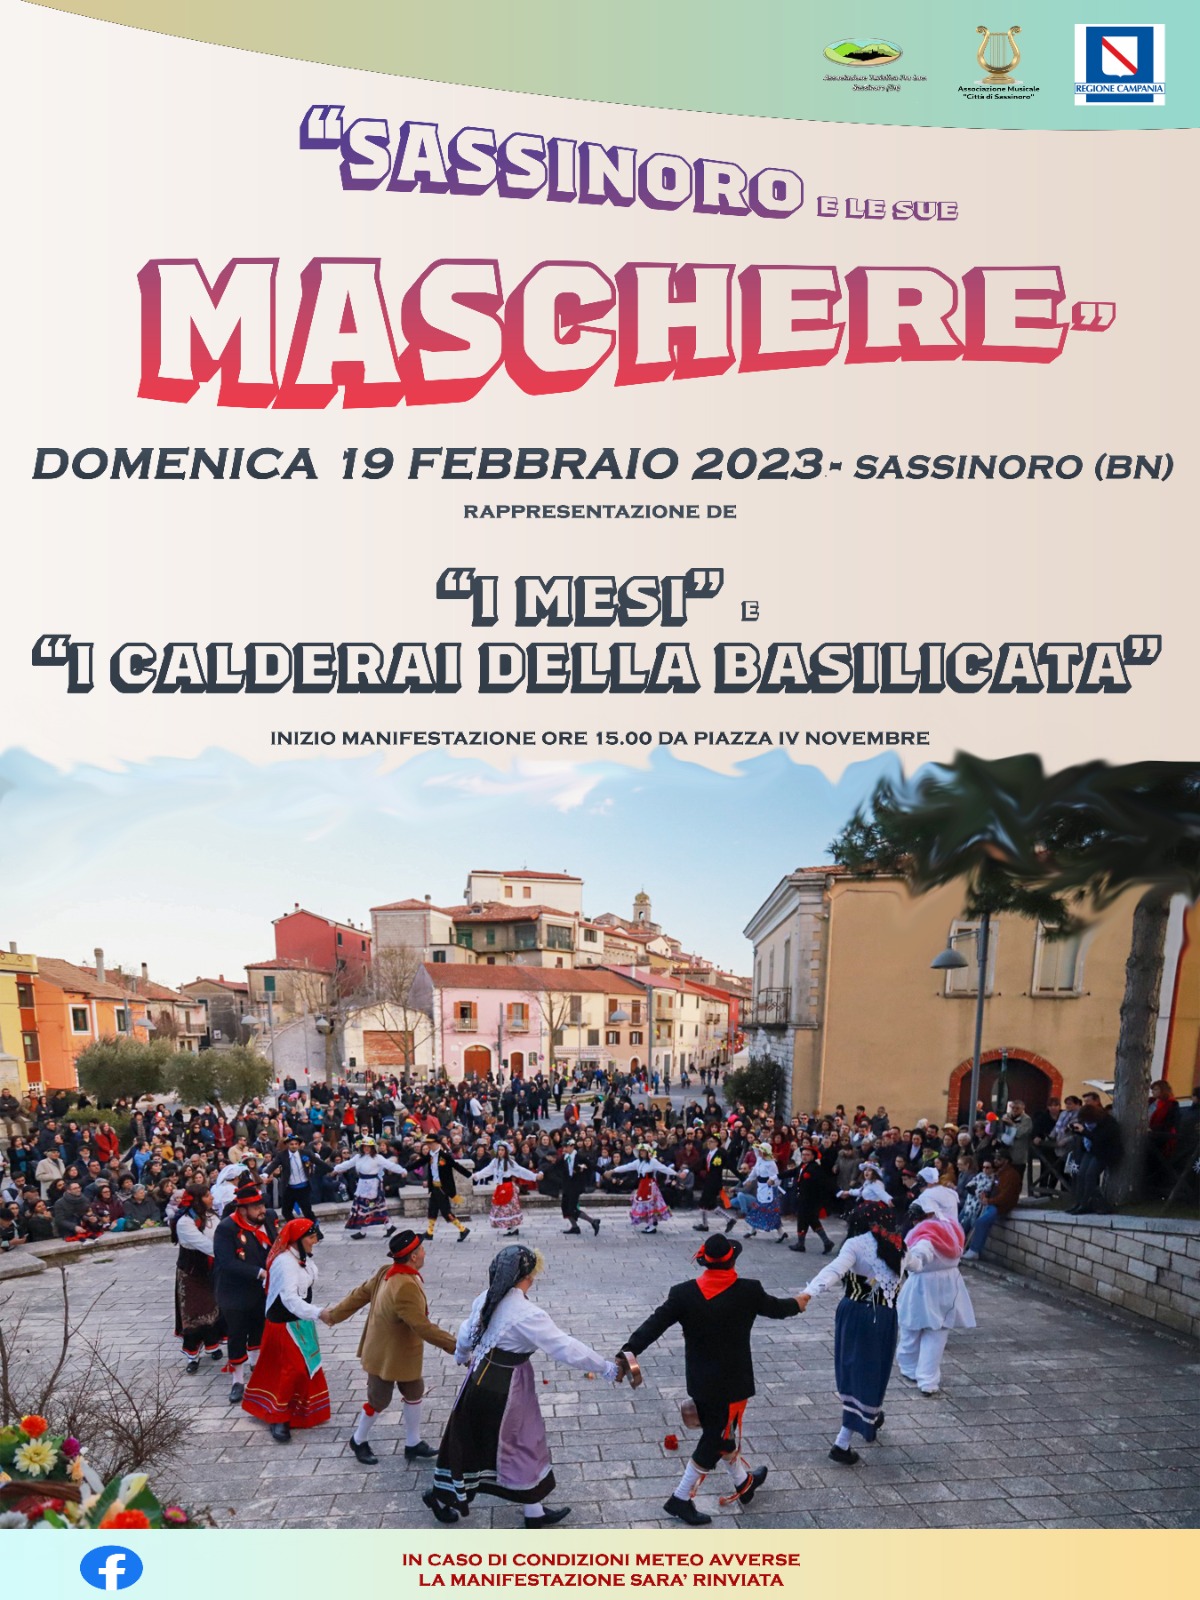 Domenica 19 febbraio 2023 torna protagonista il Carnevale a Sassinoro